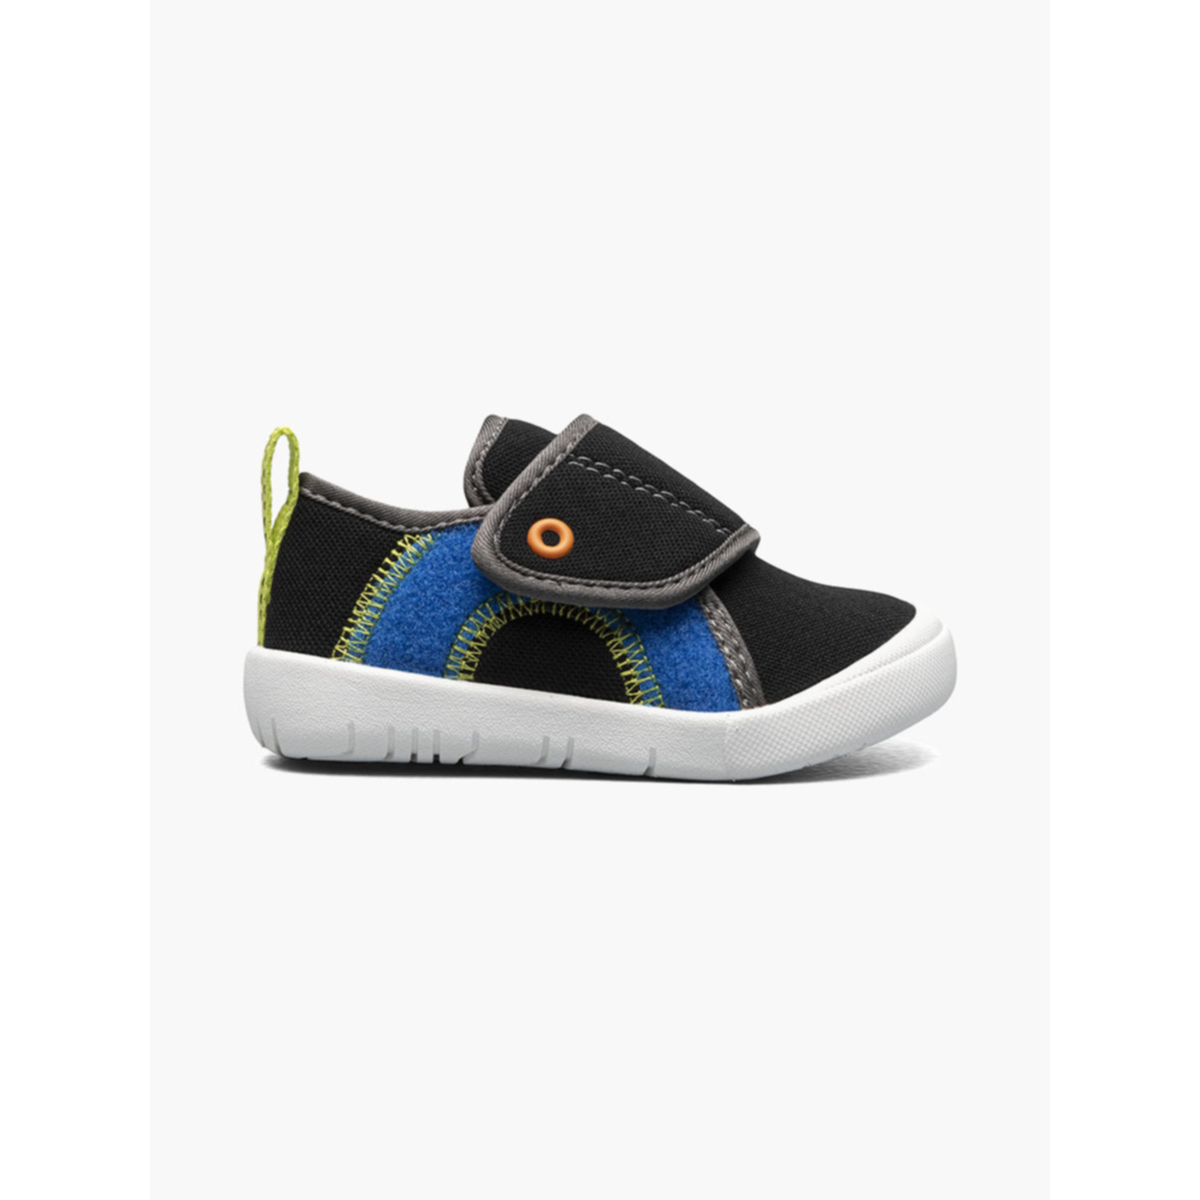 BOGS Unisex Baby Kicker Hook And Loop Shoe Sneaker Black Multi - 72811I-009 1 BLACK MULTI - BLACK MULTI, 7 Little Kid